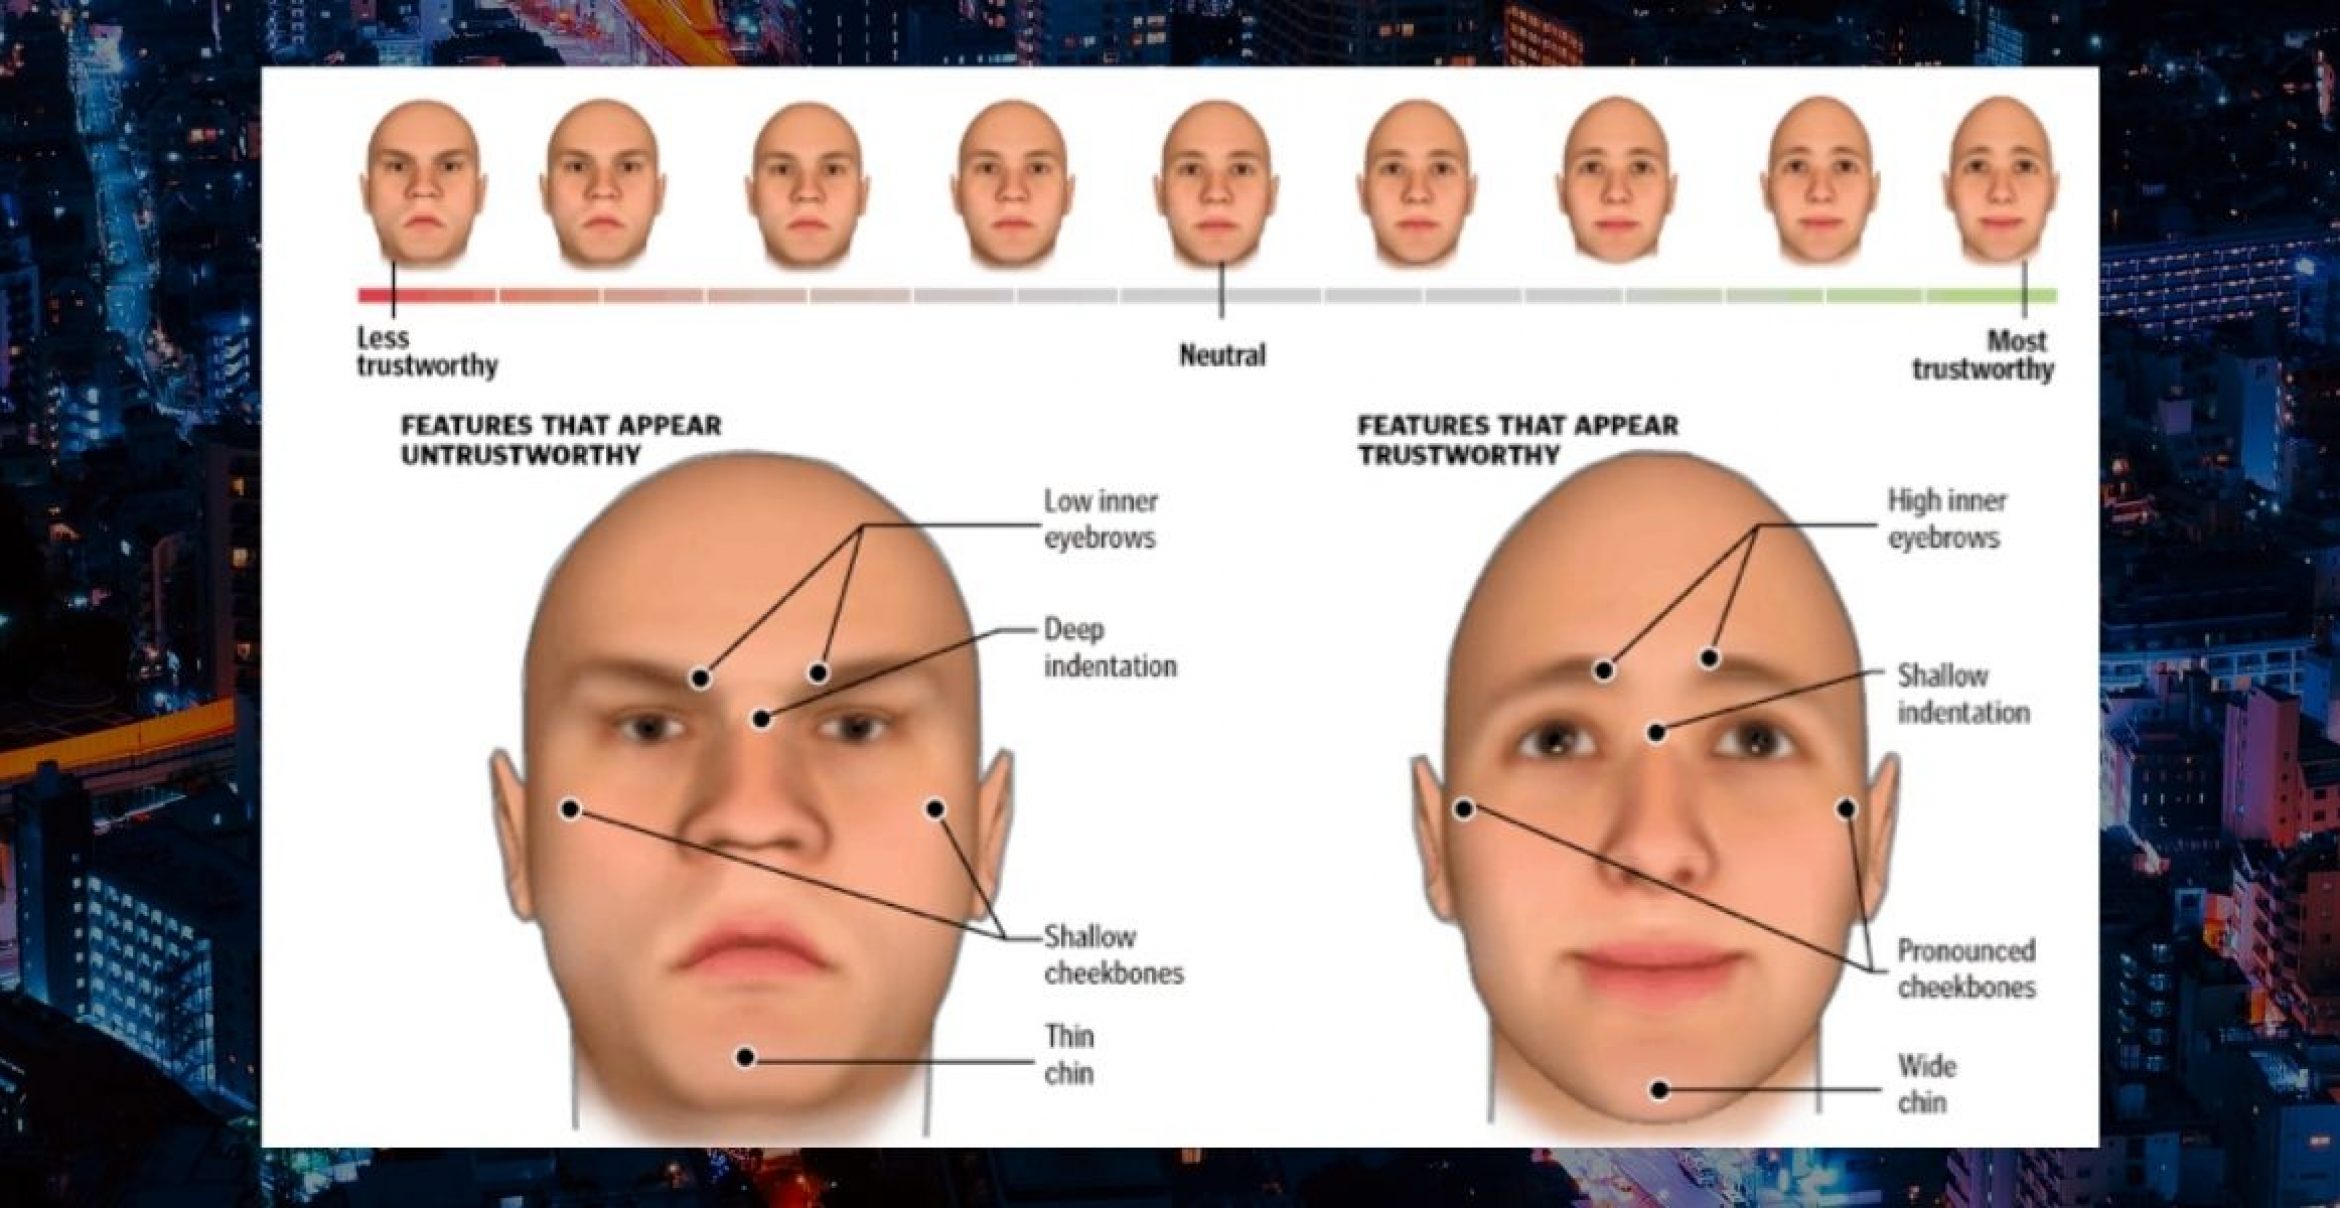 Forscher stellt Gesichtserkennungs-AI vor, die „Vertrauenswürdigkeit“ bestimmt – Twitter reagiert empört